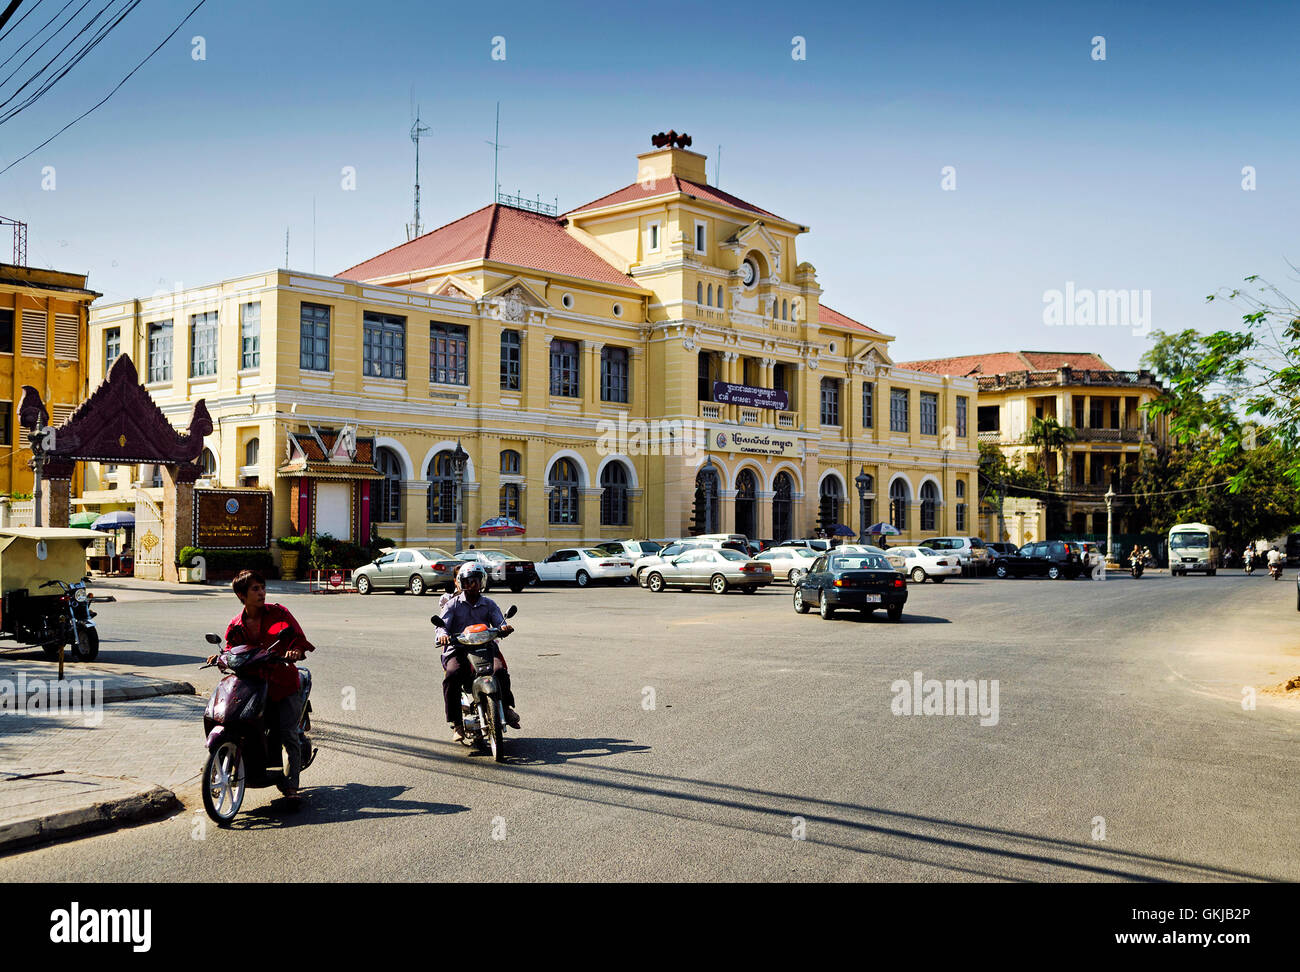 In vecchio stile coloniale francese di architettura post office nel centro di phnom penh cambogia città Foto Stock